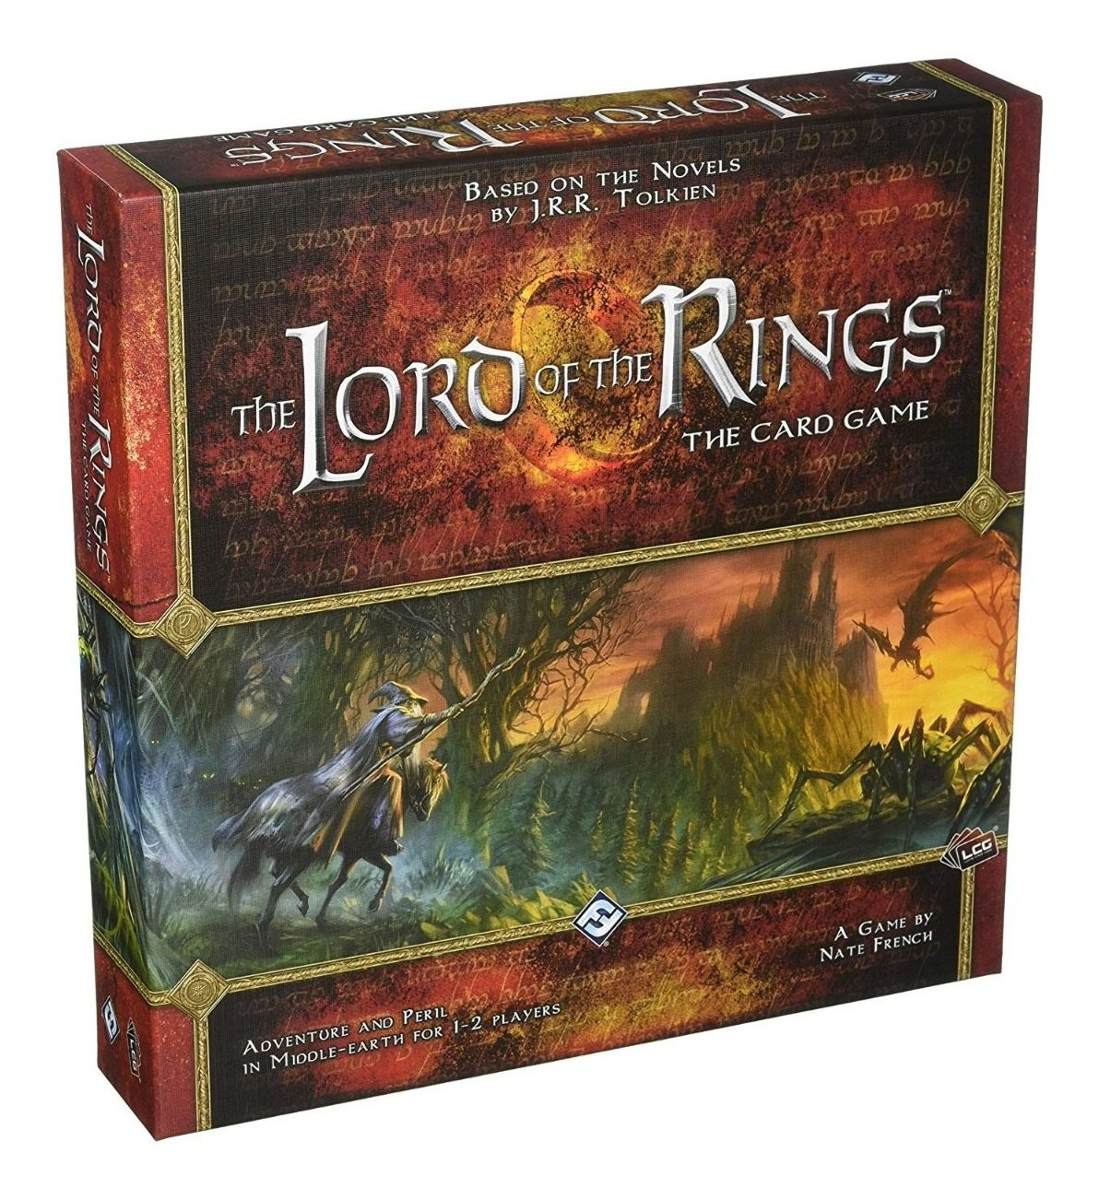 სამაგიდო თამაში ბეჭდების მბრძანებელი LCG: საბანქო თამაში (Lord of the Rings LCG: The Card Game) სამაგიდო თამაში